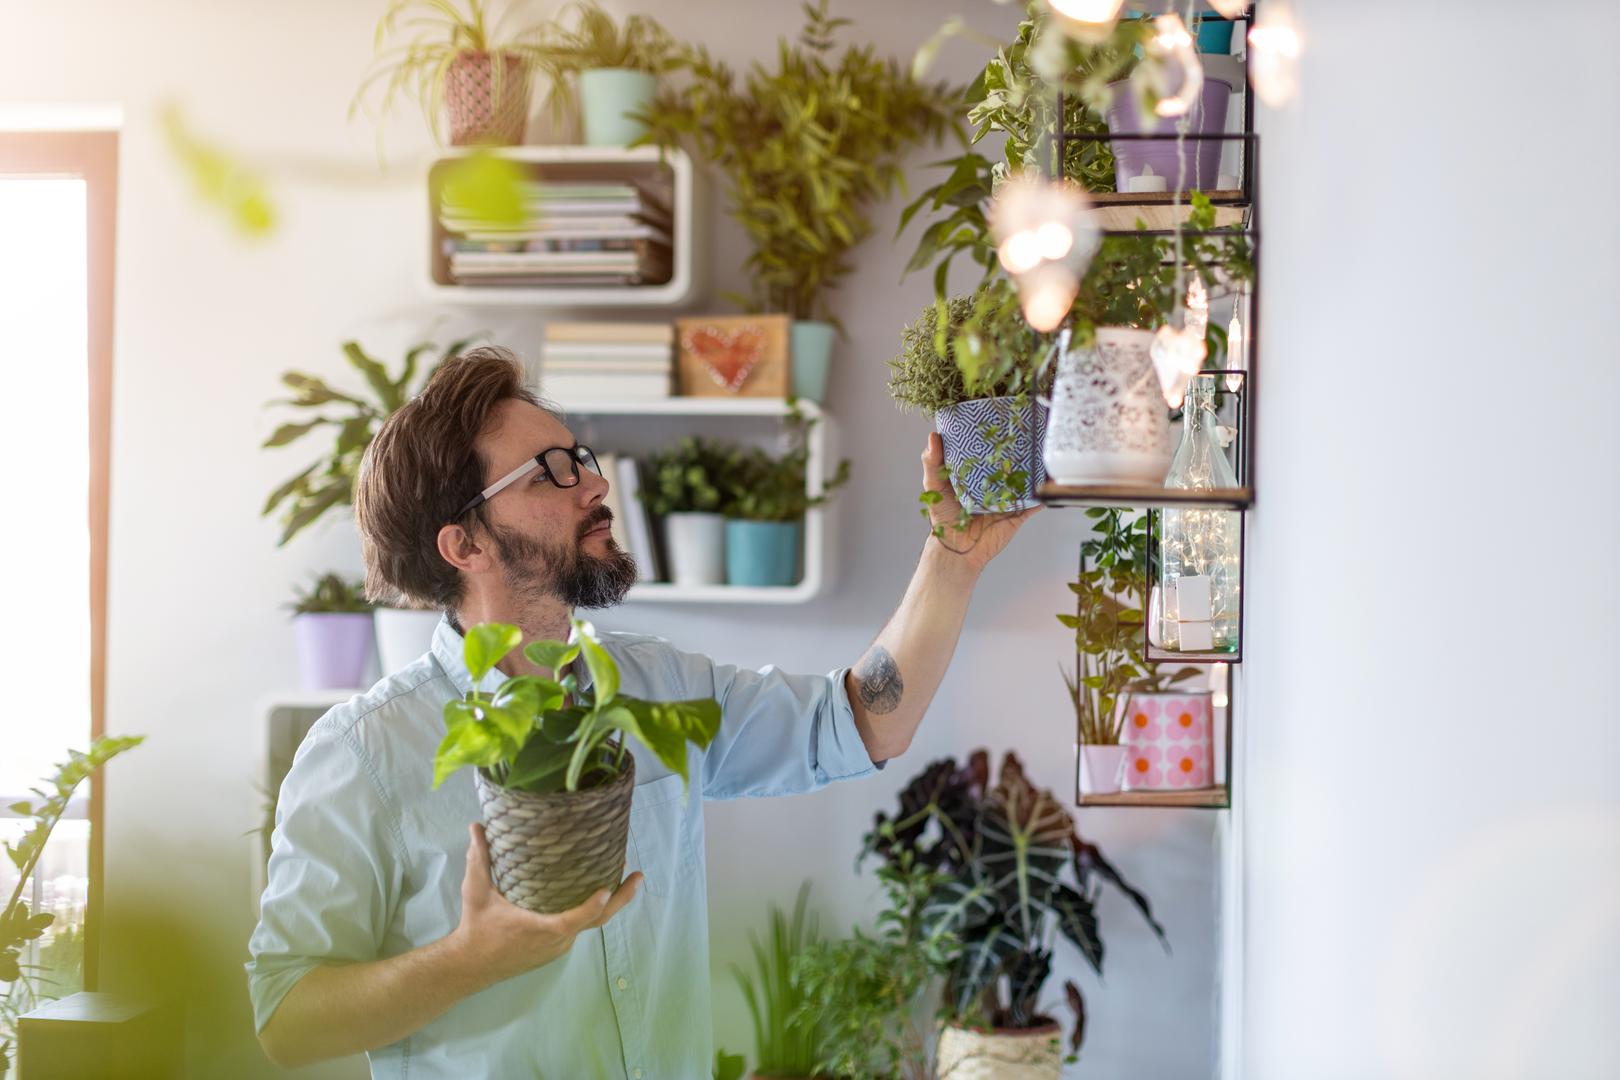 Pola ljudi na istraživanju reklo je da su odlučili biljkama ukrasiti dom jer ih to ispunjava, a i čini prostor ljepšim. 47 posto ipak kupuje biljke jer je to sada moderno. 81 posto odlučuje se na ukrašavanje doma biljkama jer imaju pozitivan učinak na mentalno i fizičko zdravlje.